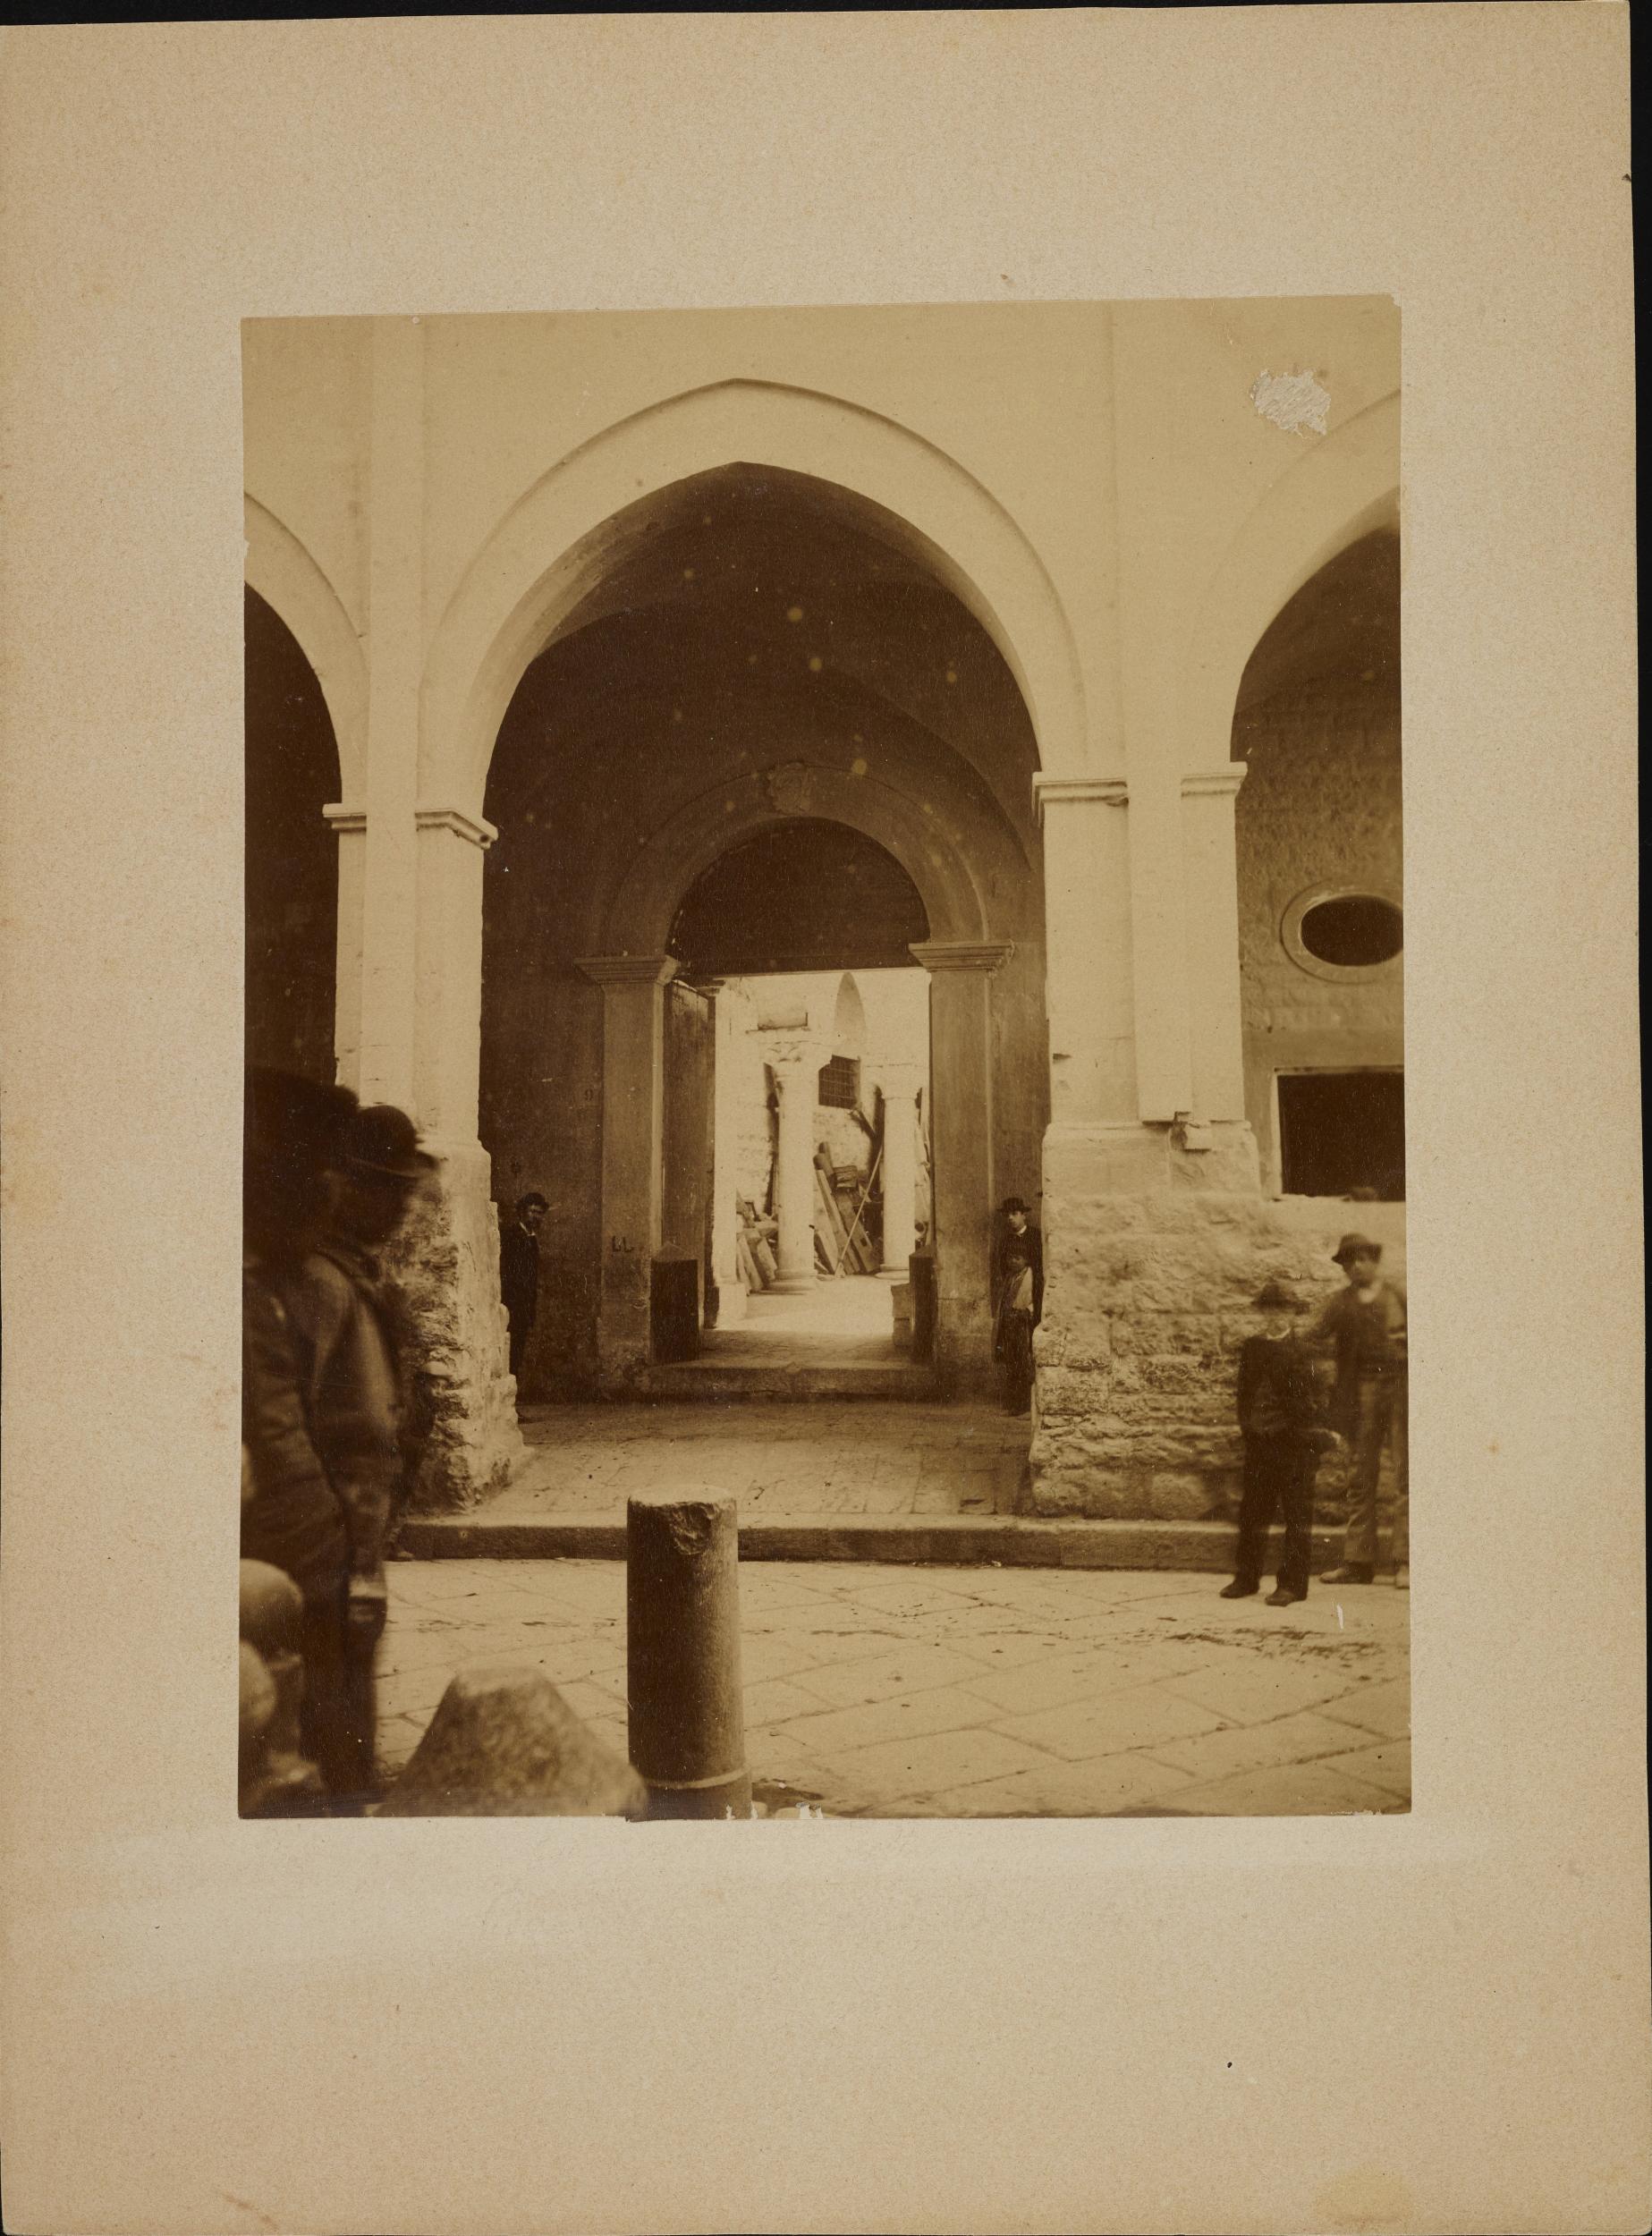 Fotografo non identificato, Barletta - Palazzo Bonelli, interno, 1880 ca., albumina/carta, 15,8x20,5 cm, MPI312826